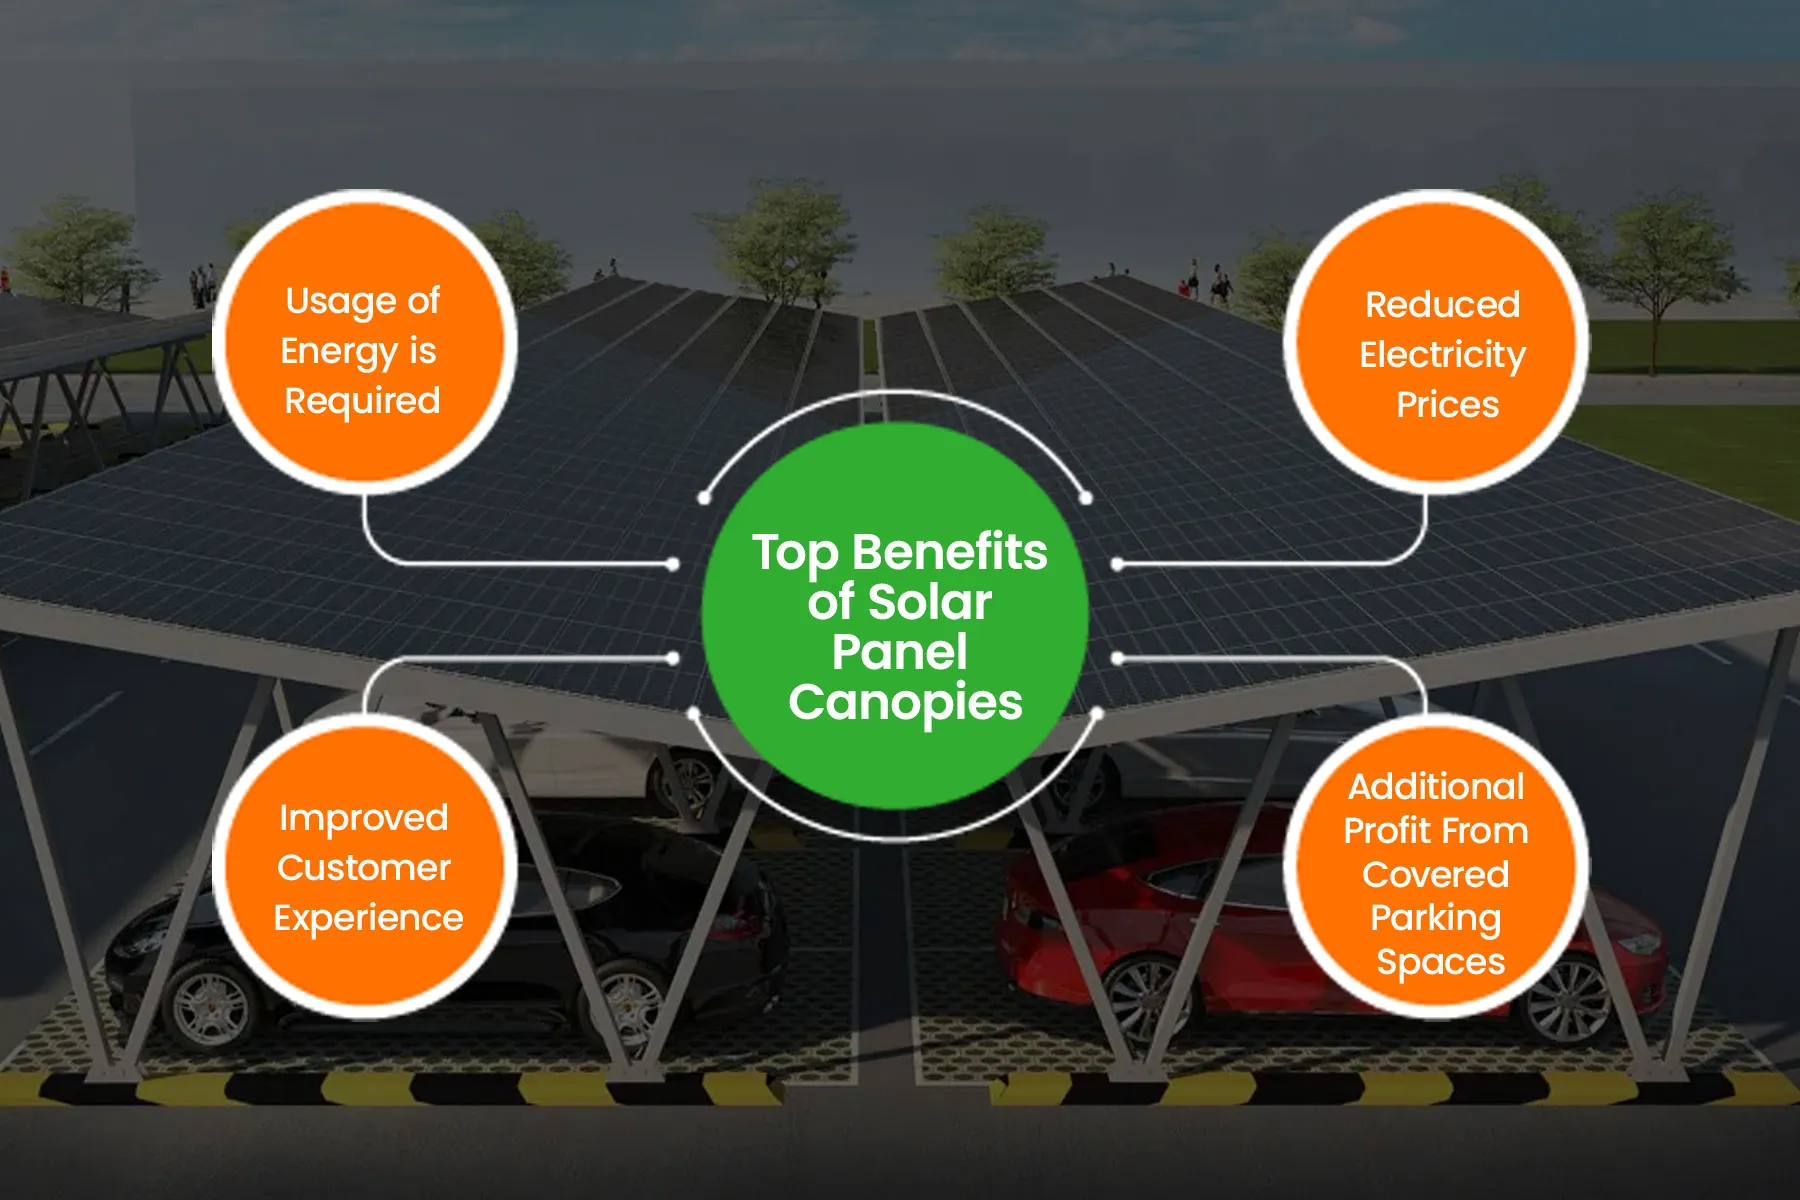 Top Benefits of Solar Panel Canopies